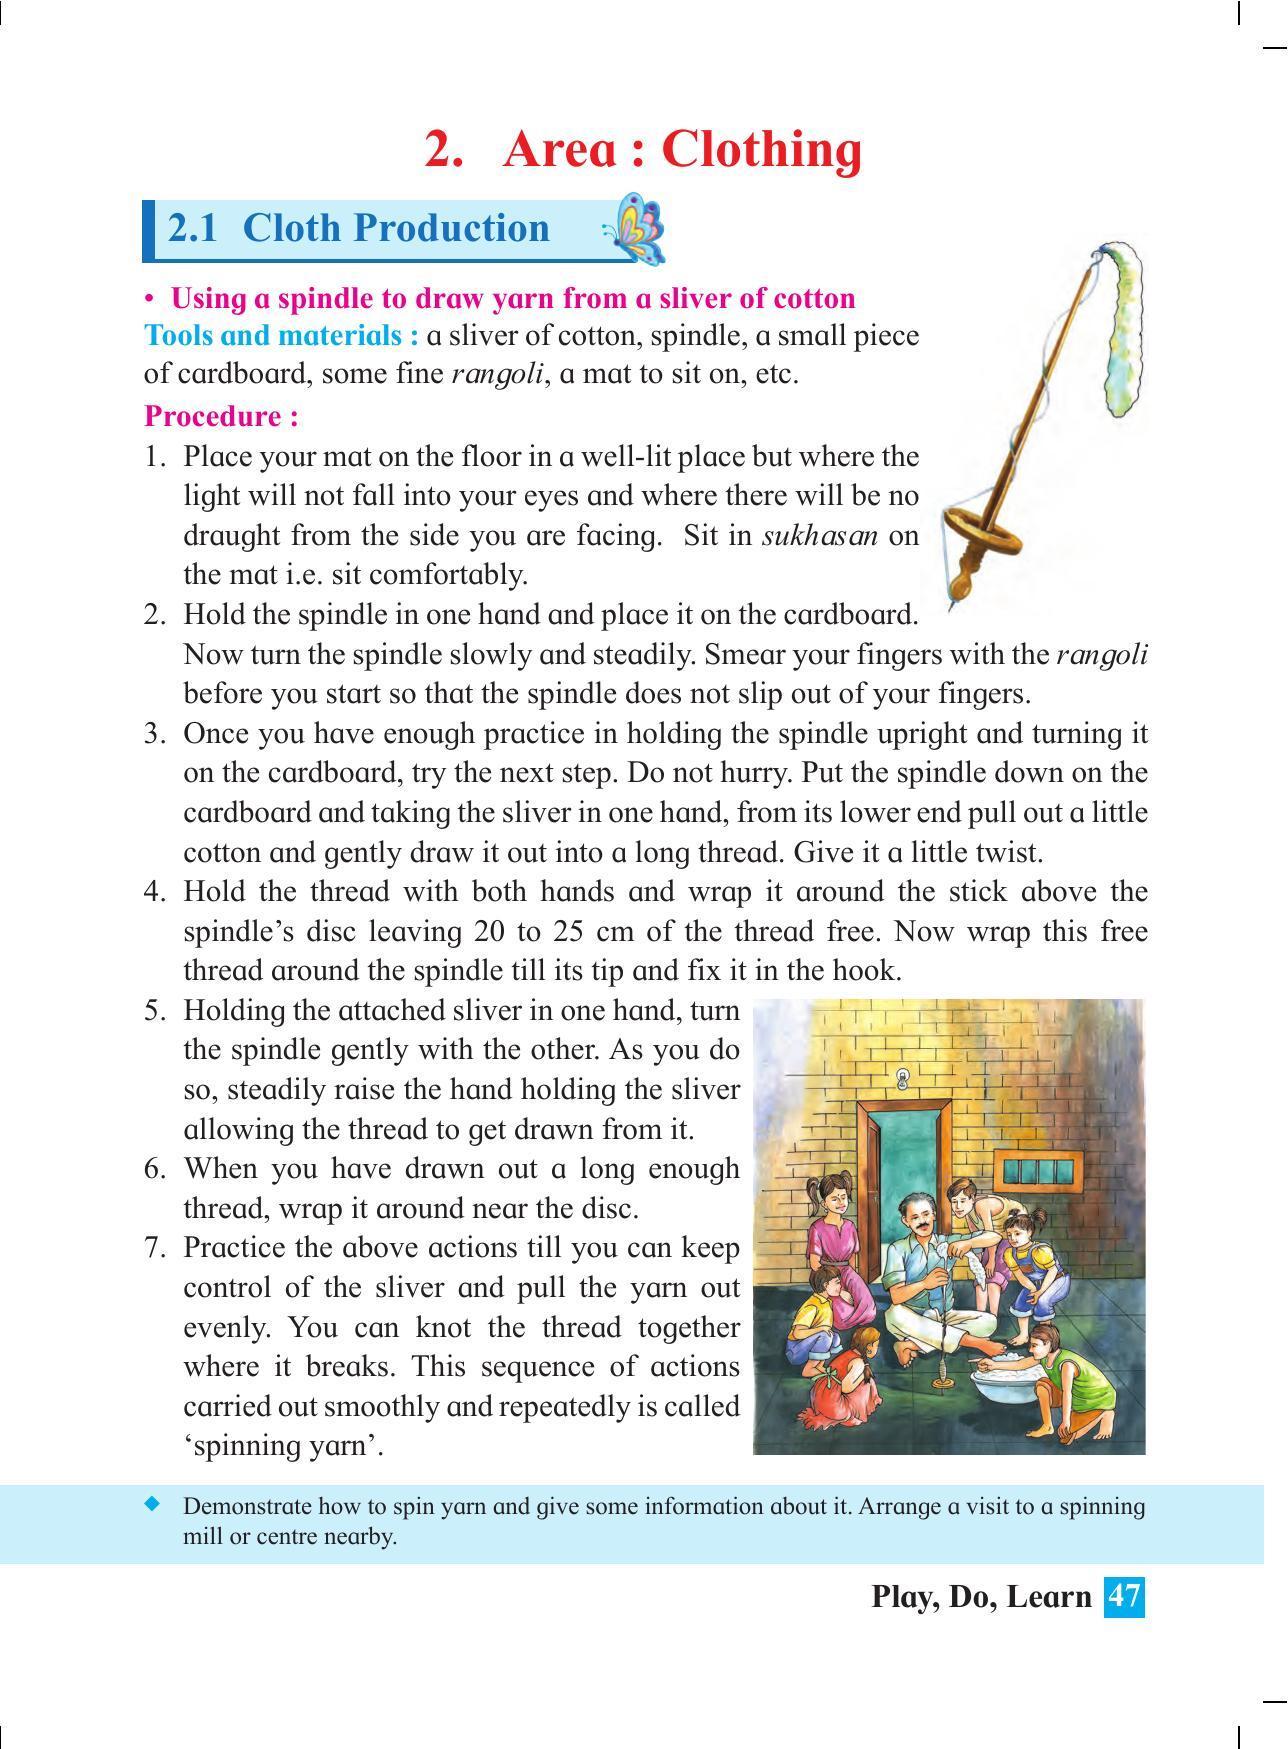 Maharashtra Board Class 4 Play Do Learn (English Medium) Textbook - Page 56